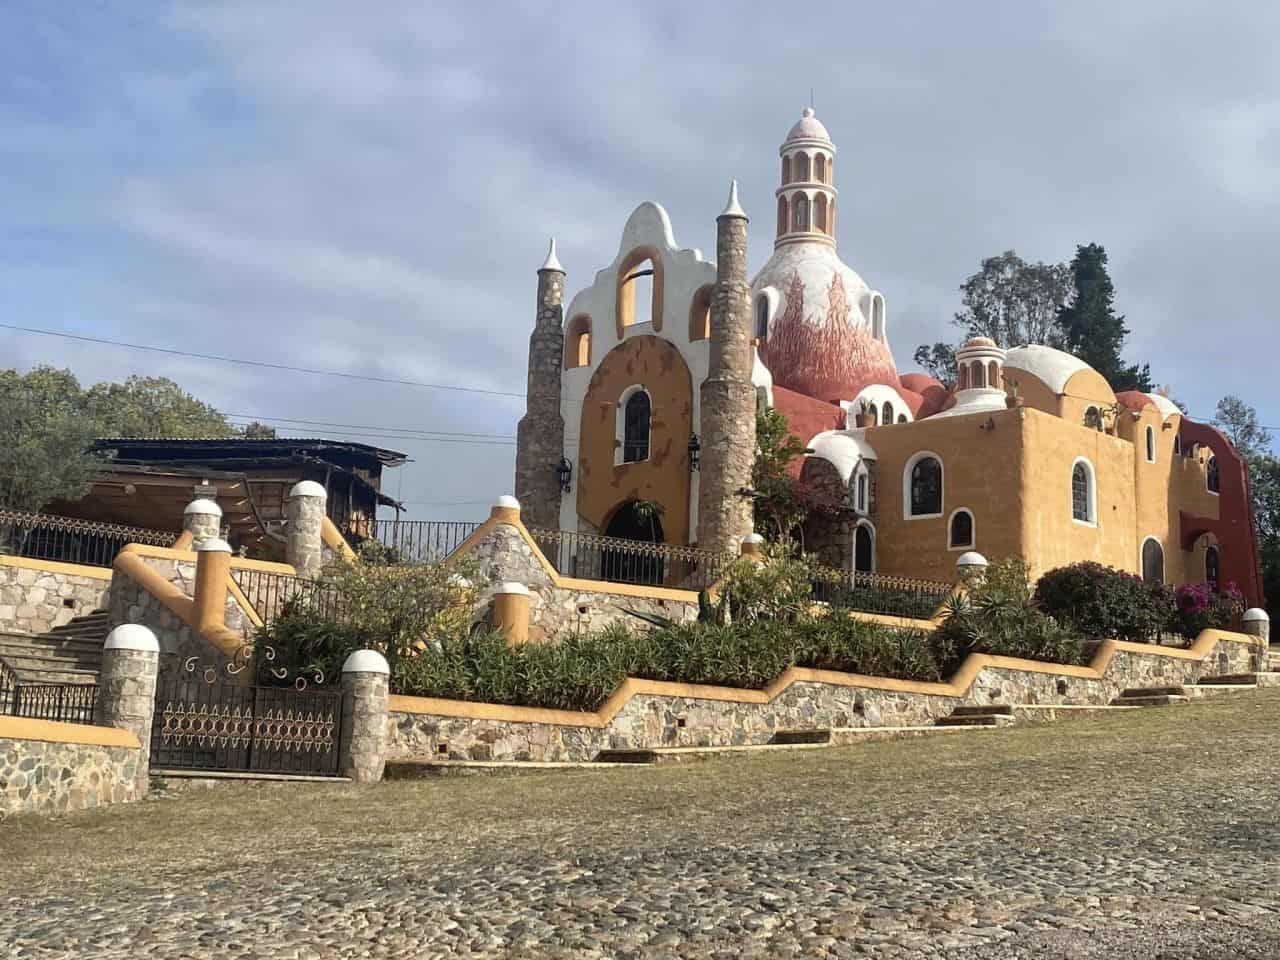 Unique architecture in Mexico